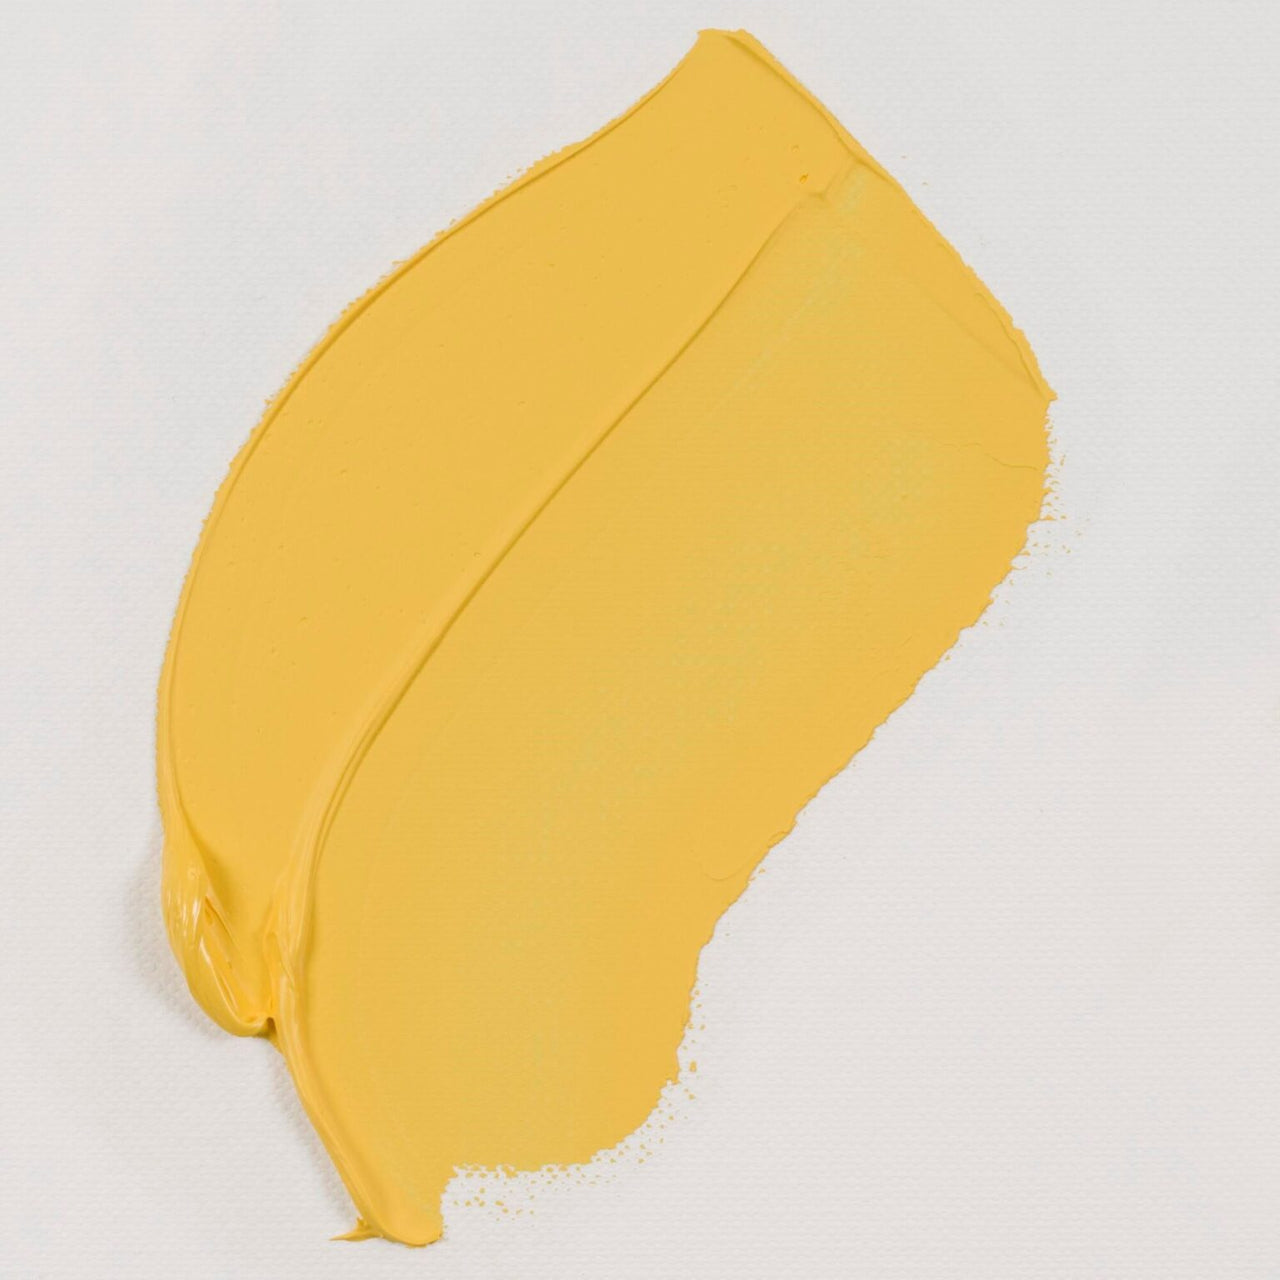 VGO Azo Yellow Medium 40ml